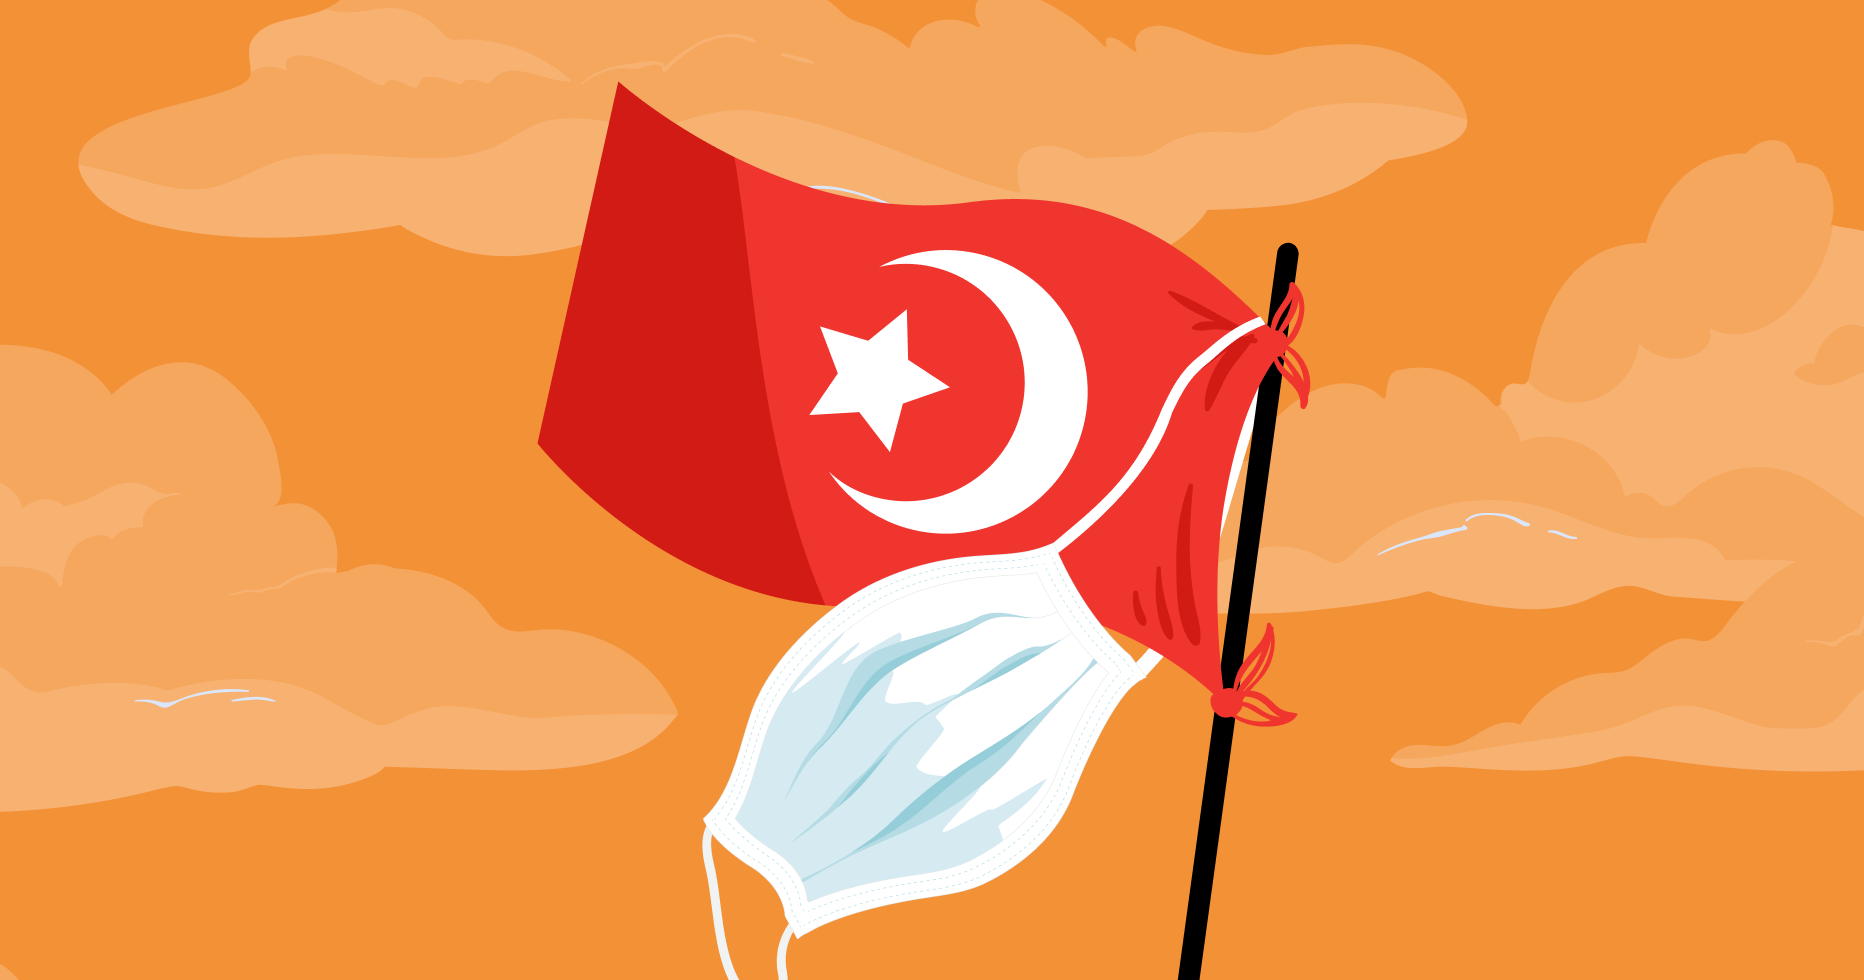 Турция закрылась, что делать аффилиатам Travelpayouts